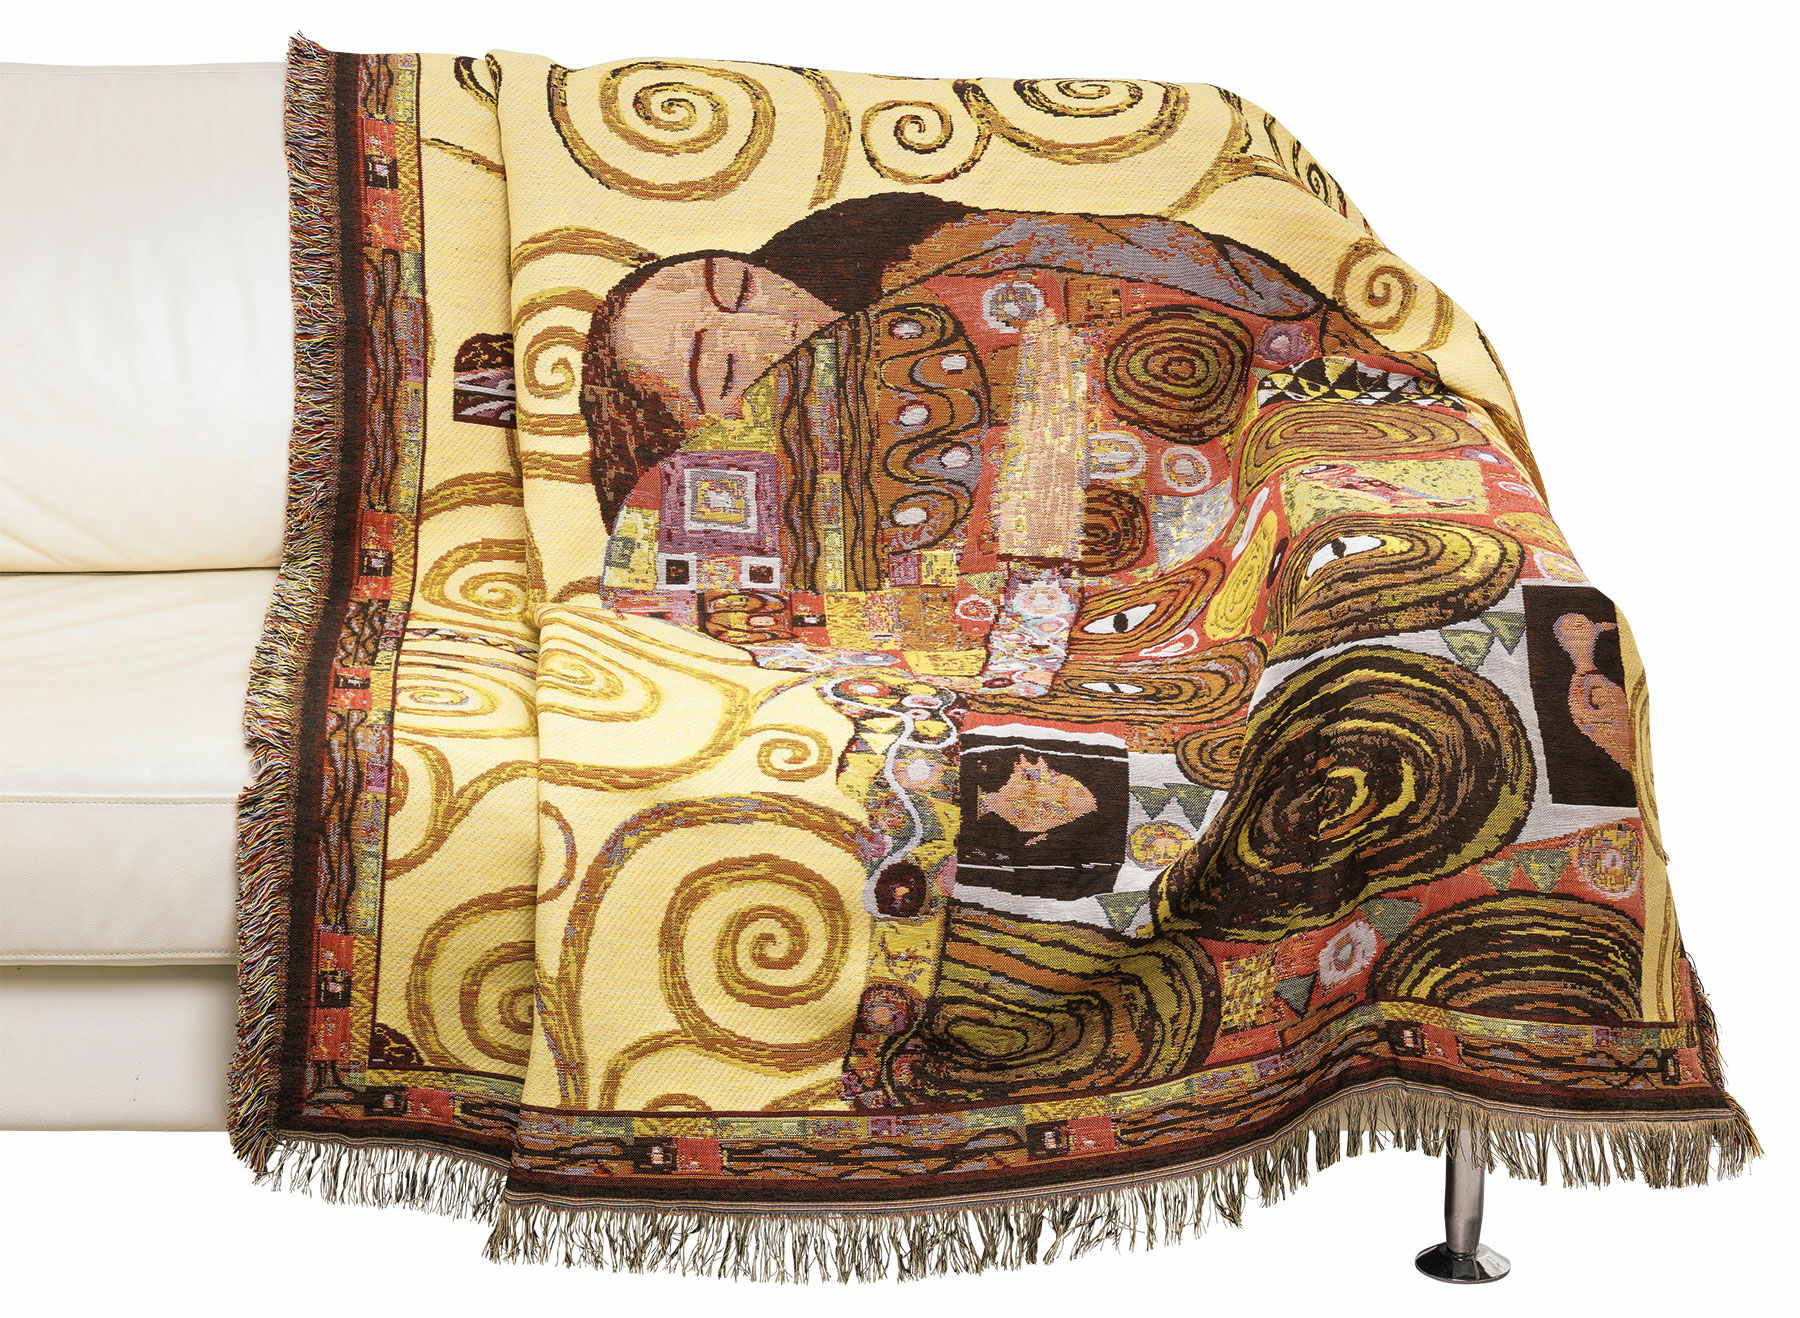 Wohnplaid "Die Erfüllung" von Gustav Klimt